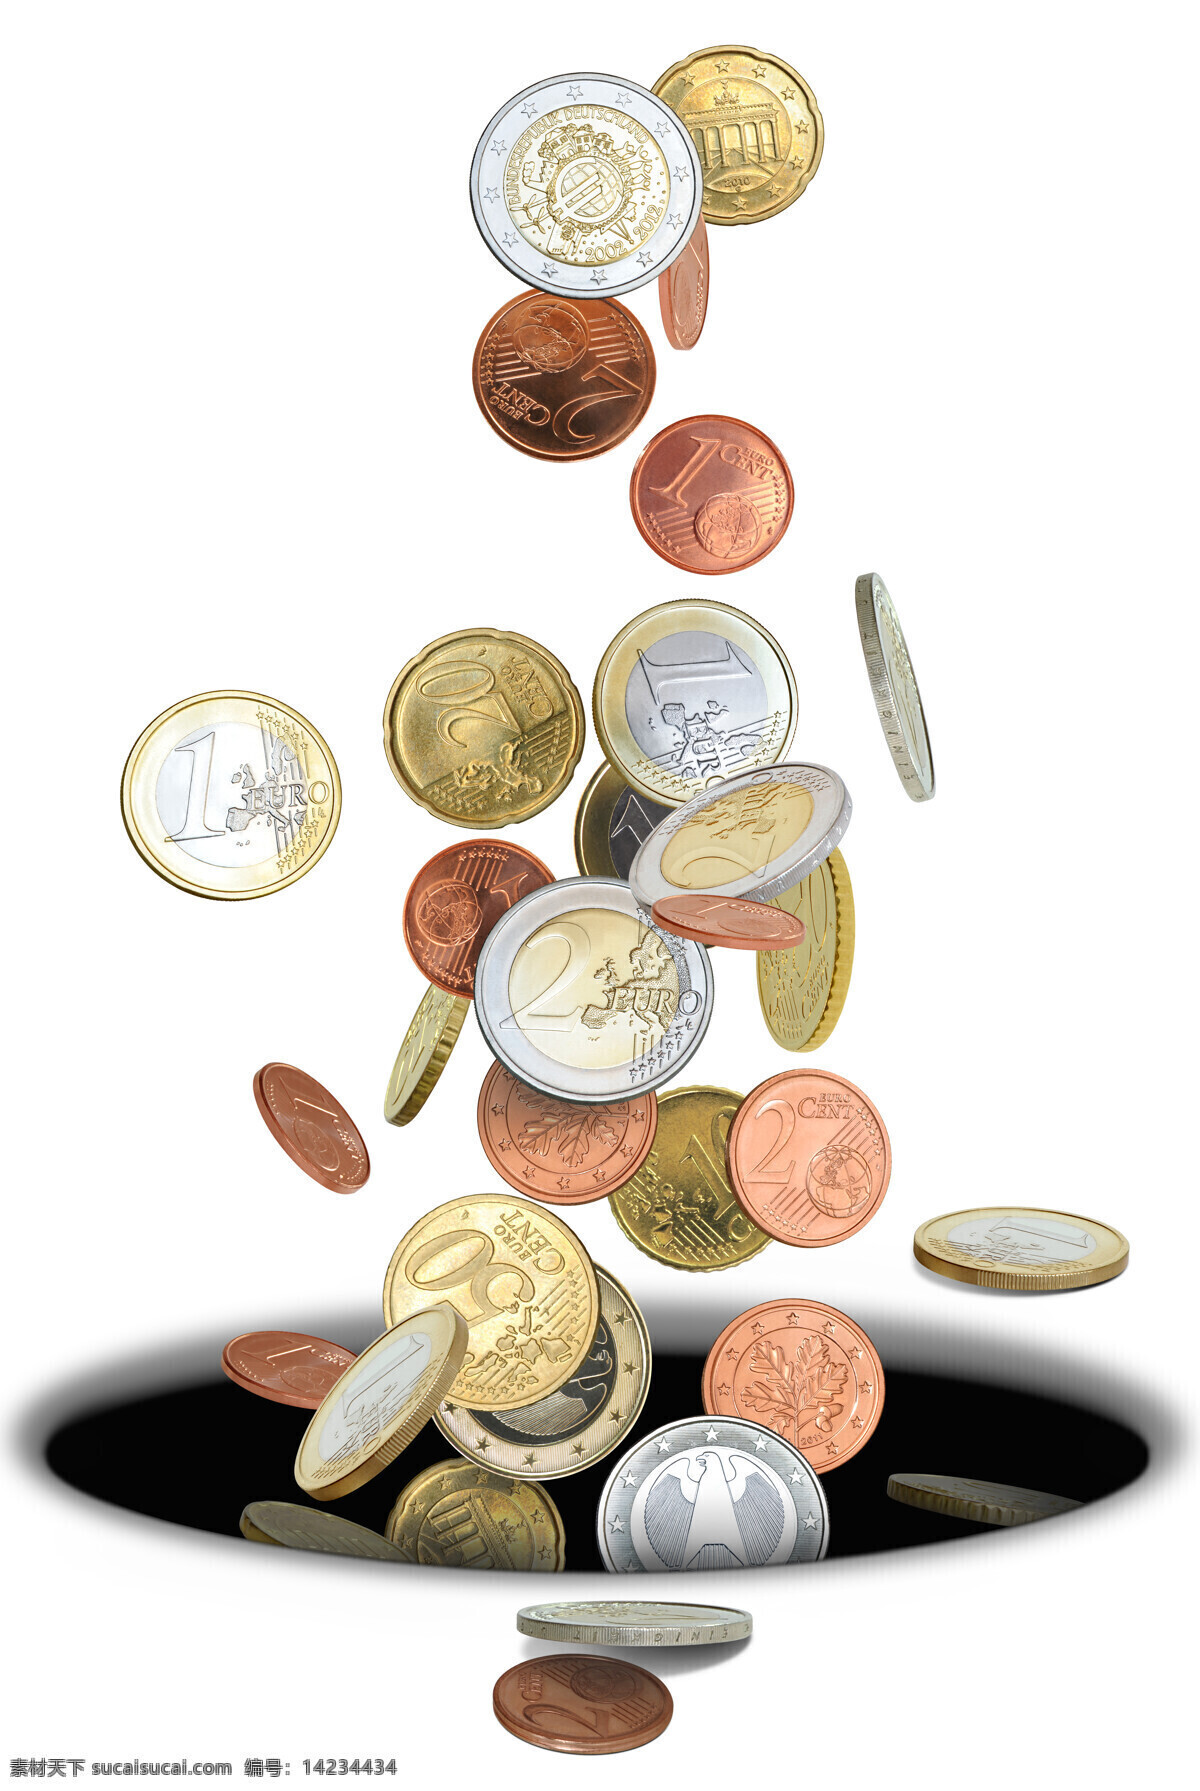 飘洒 硬币 金币 高清 飘洒的硬币 房子模型 美元 钱 财富 投资 金融 理财 金融货币 商务金融 白色